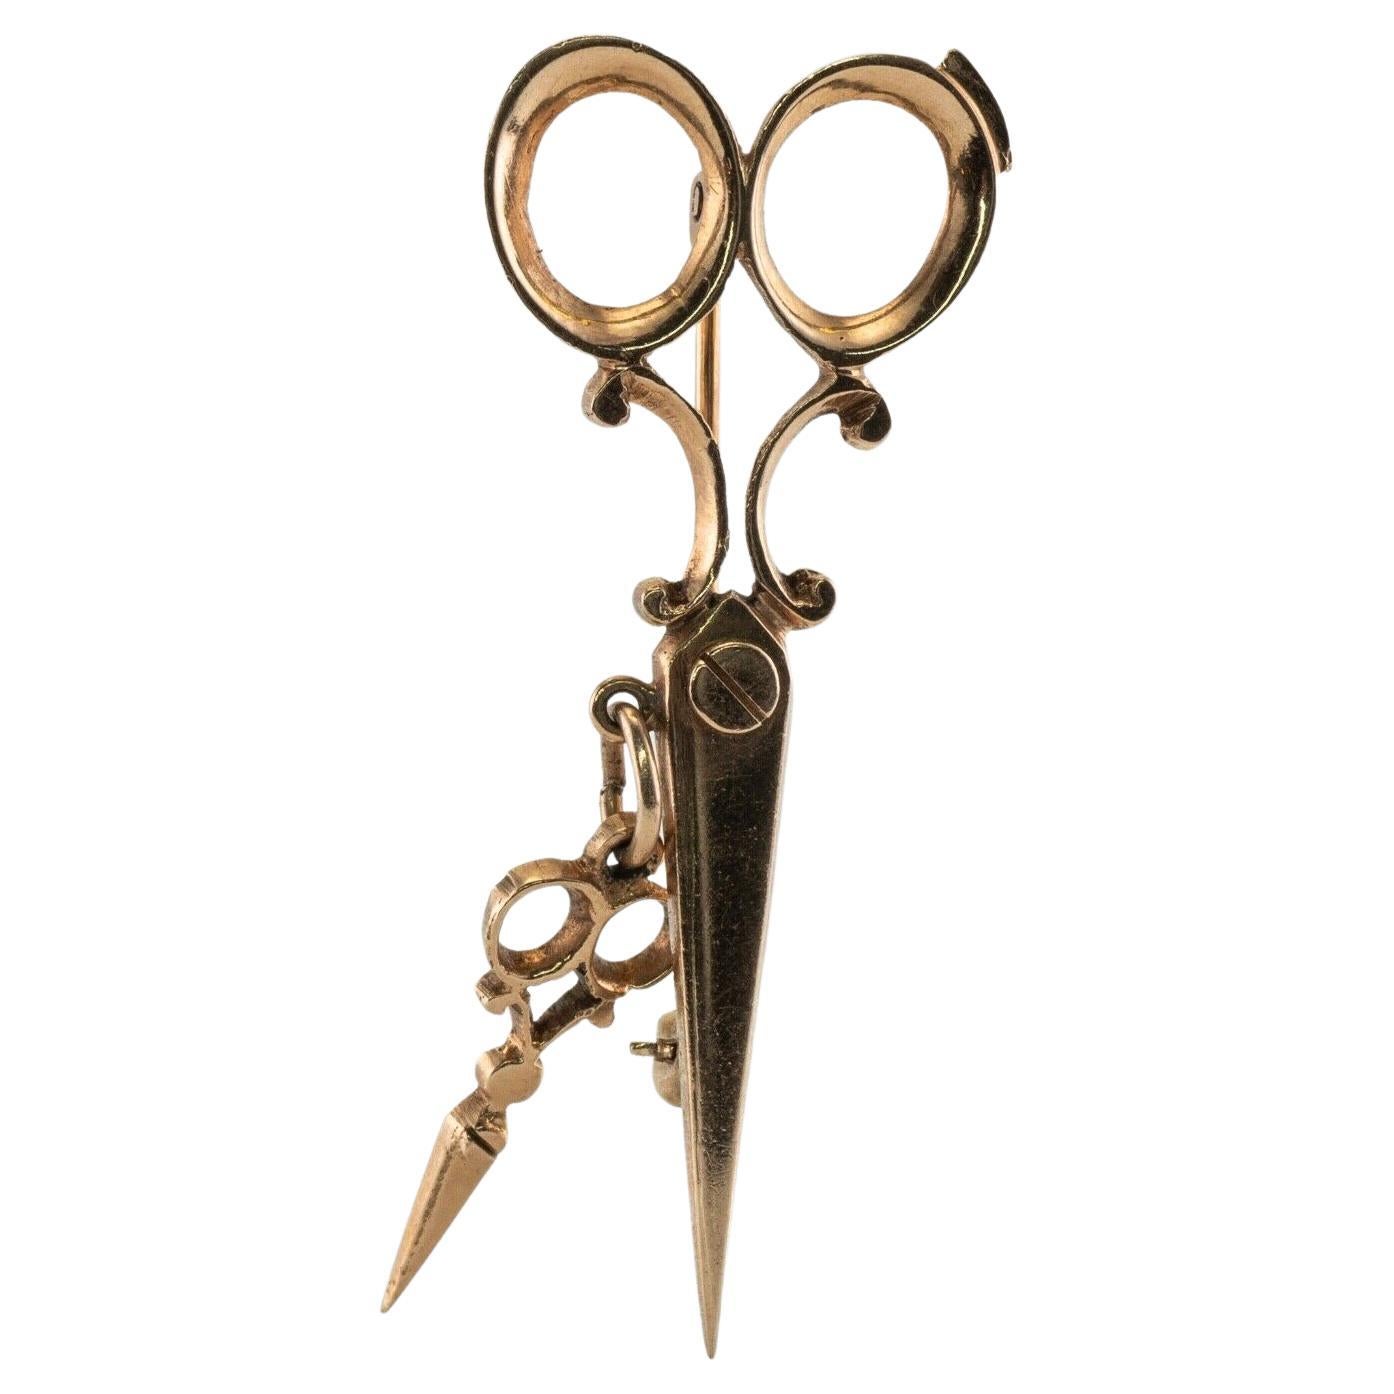 Scissors Brooch Pin 14K Pink Gold Hairstylist Hairdresser Vintage